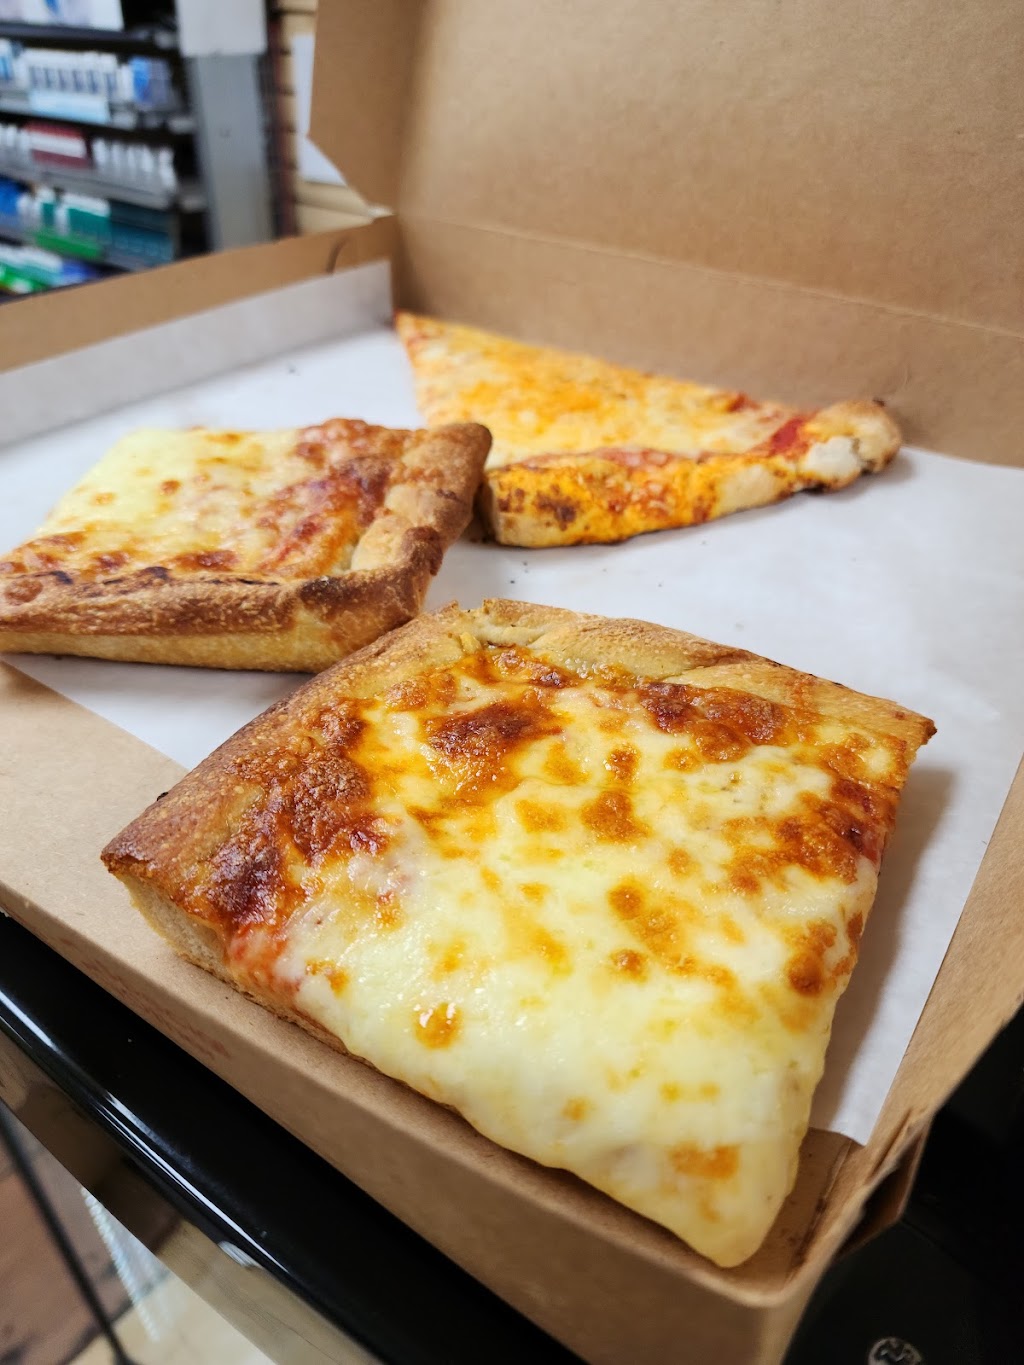 Brunellos Pizza & Pasta Of West Babylon New York | 929 Little E Neck Rd, West Babylon, NY 11704 | Phone: (631) 587-4647